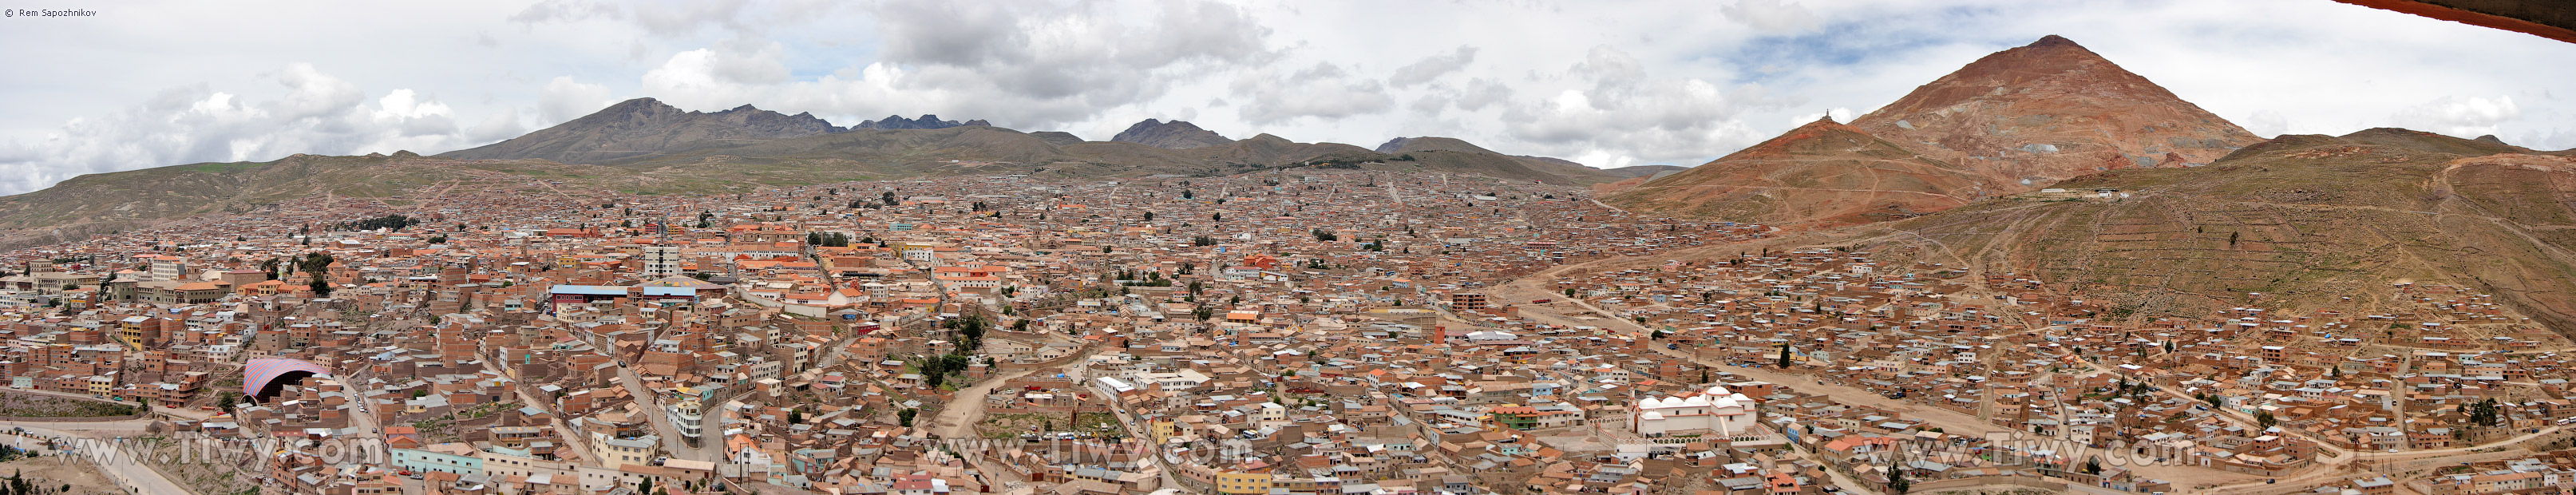 Смотровая башня Пари Орко - Потоси, Боливия